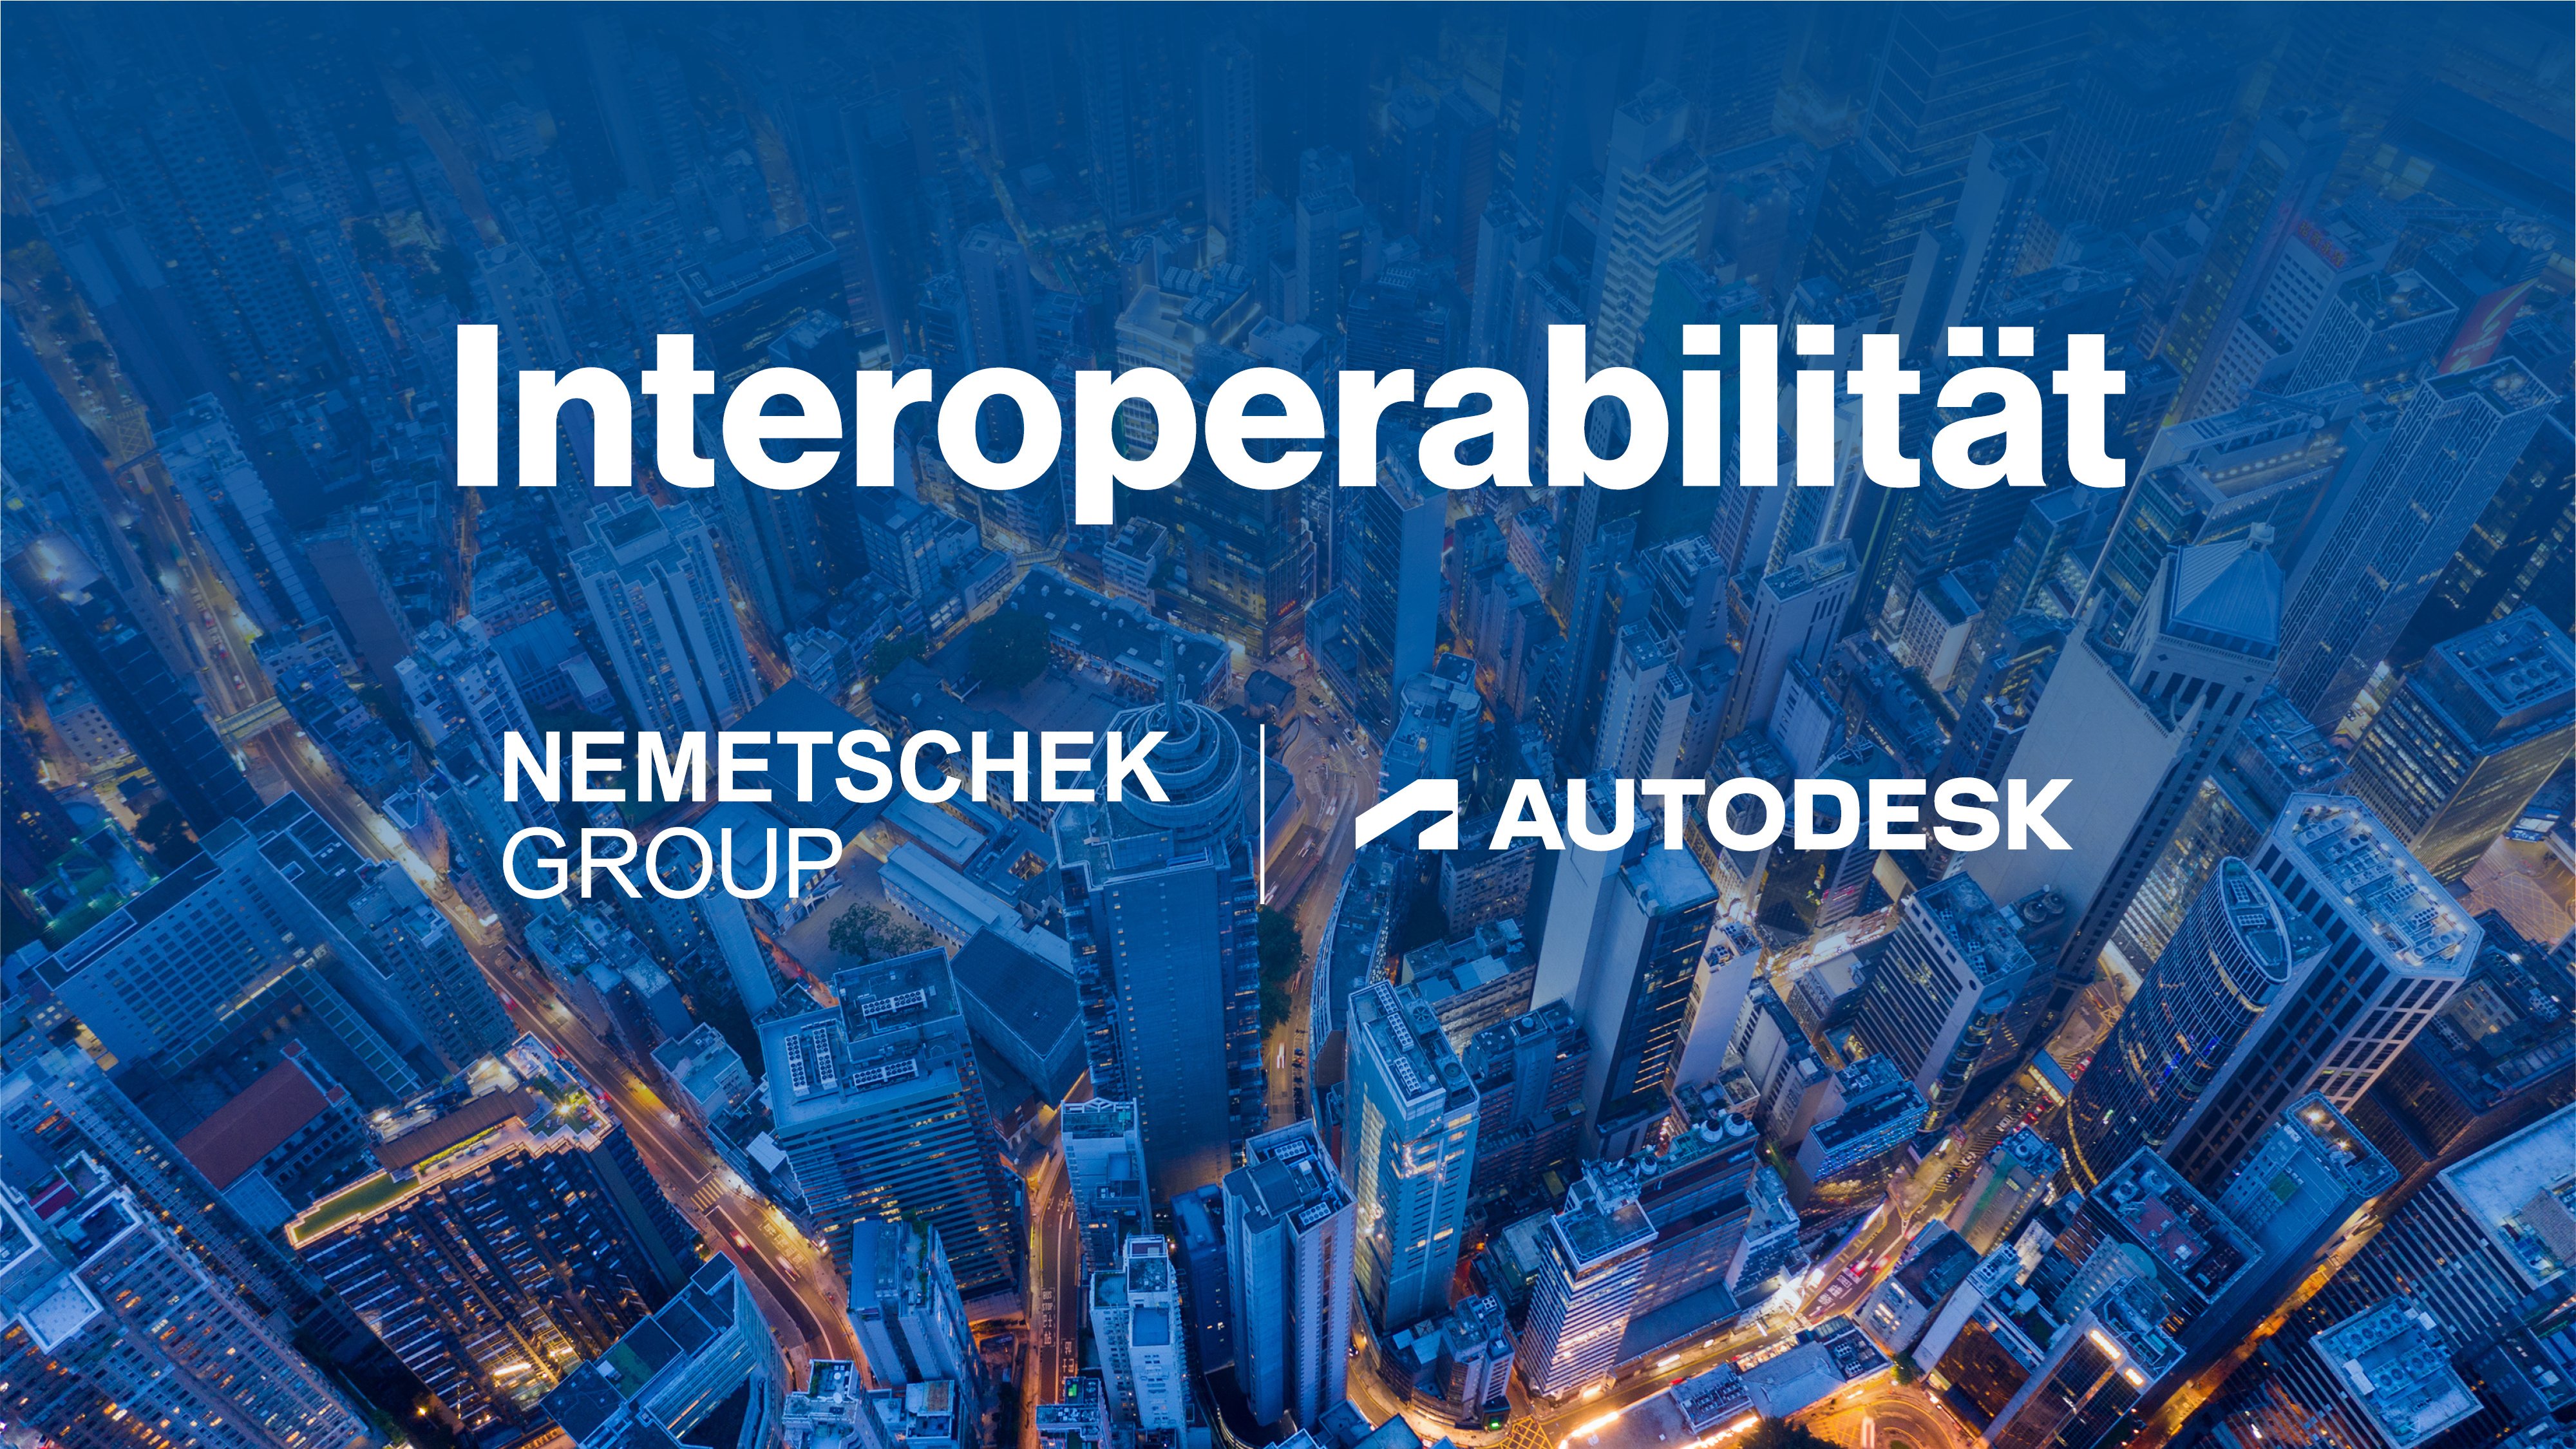 Gemeinsam besser bauen: Die Interoperabilitätsvereinbarung von Nemetschek und Autodesk